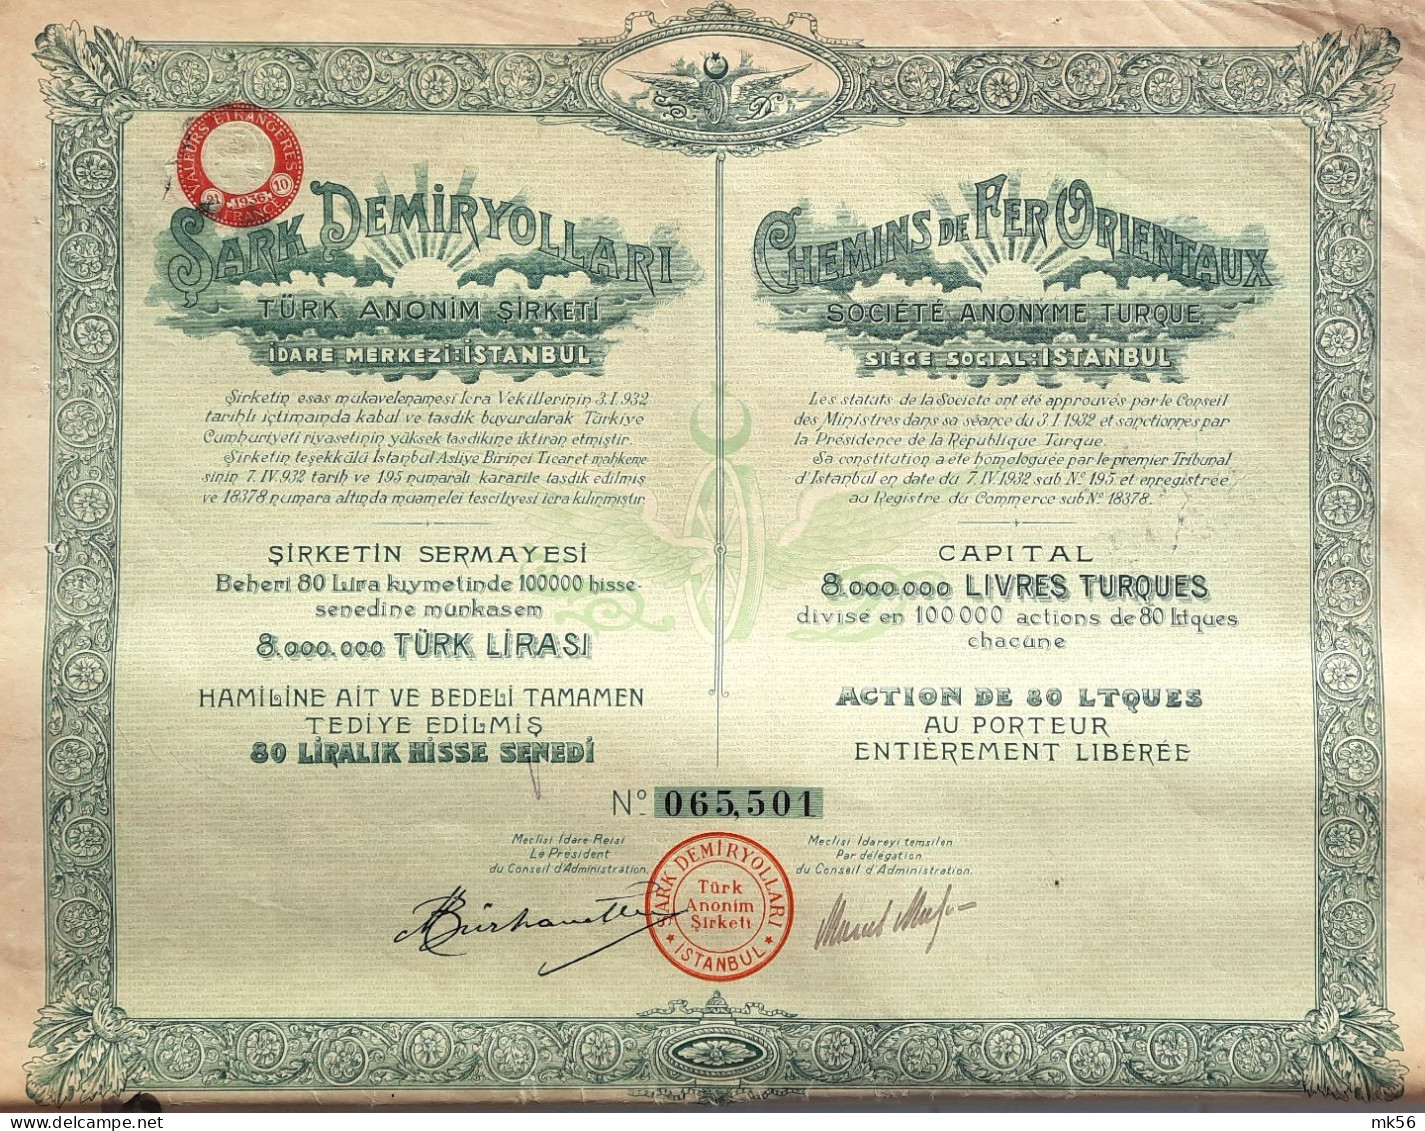 Chemins De Fer Orientaux - Istanbul - Action De 80 Ltques - 1932 - Ferrovie & Tranvie